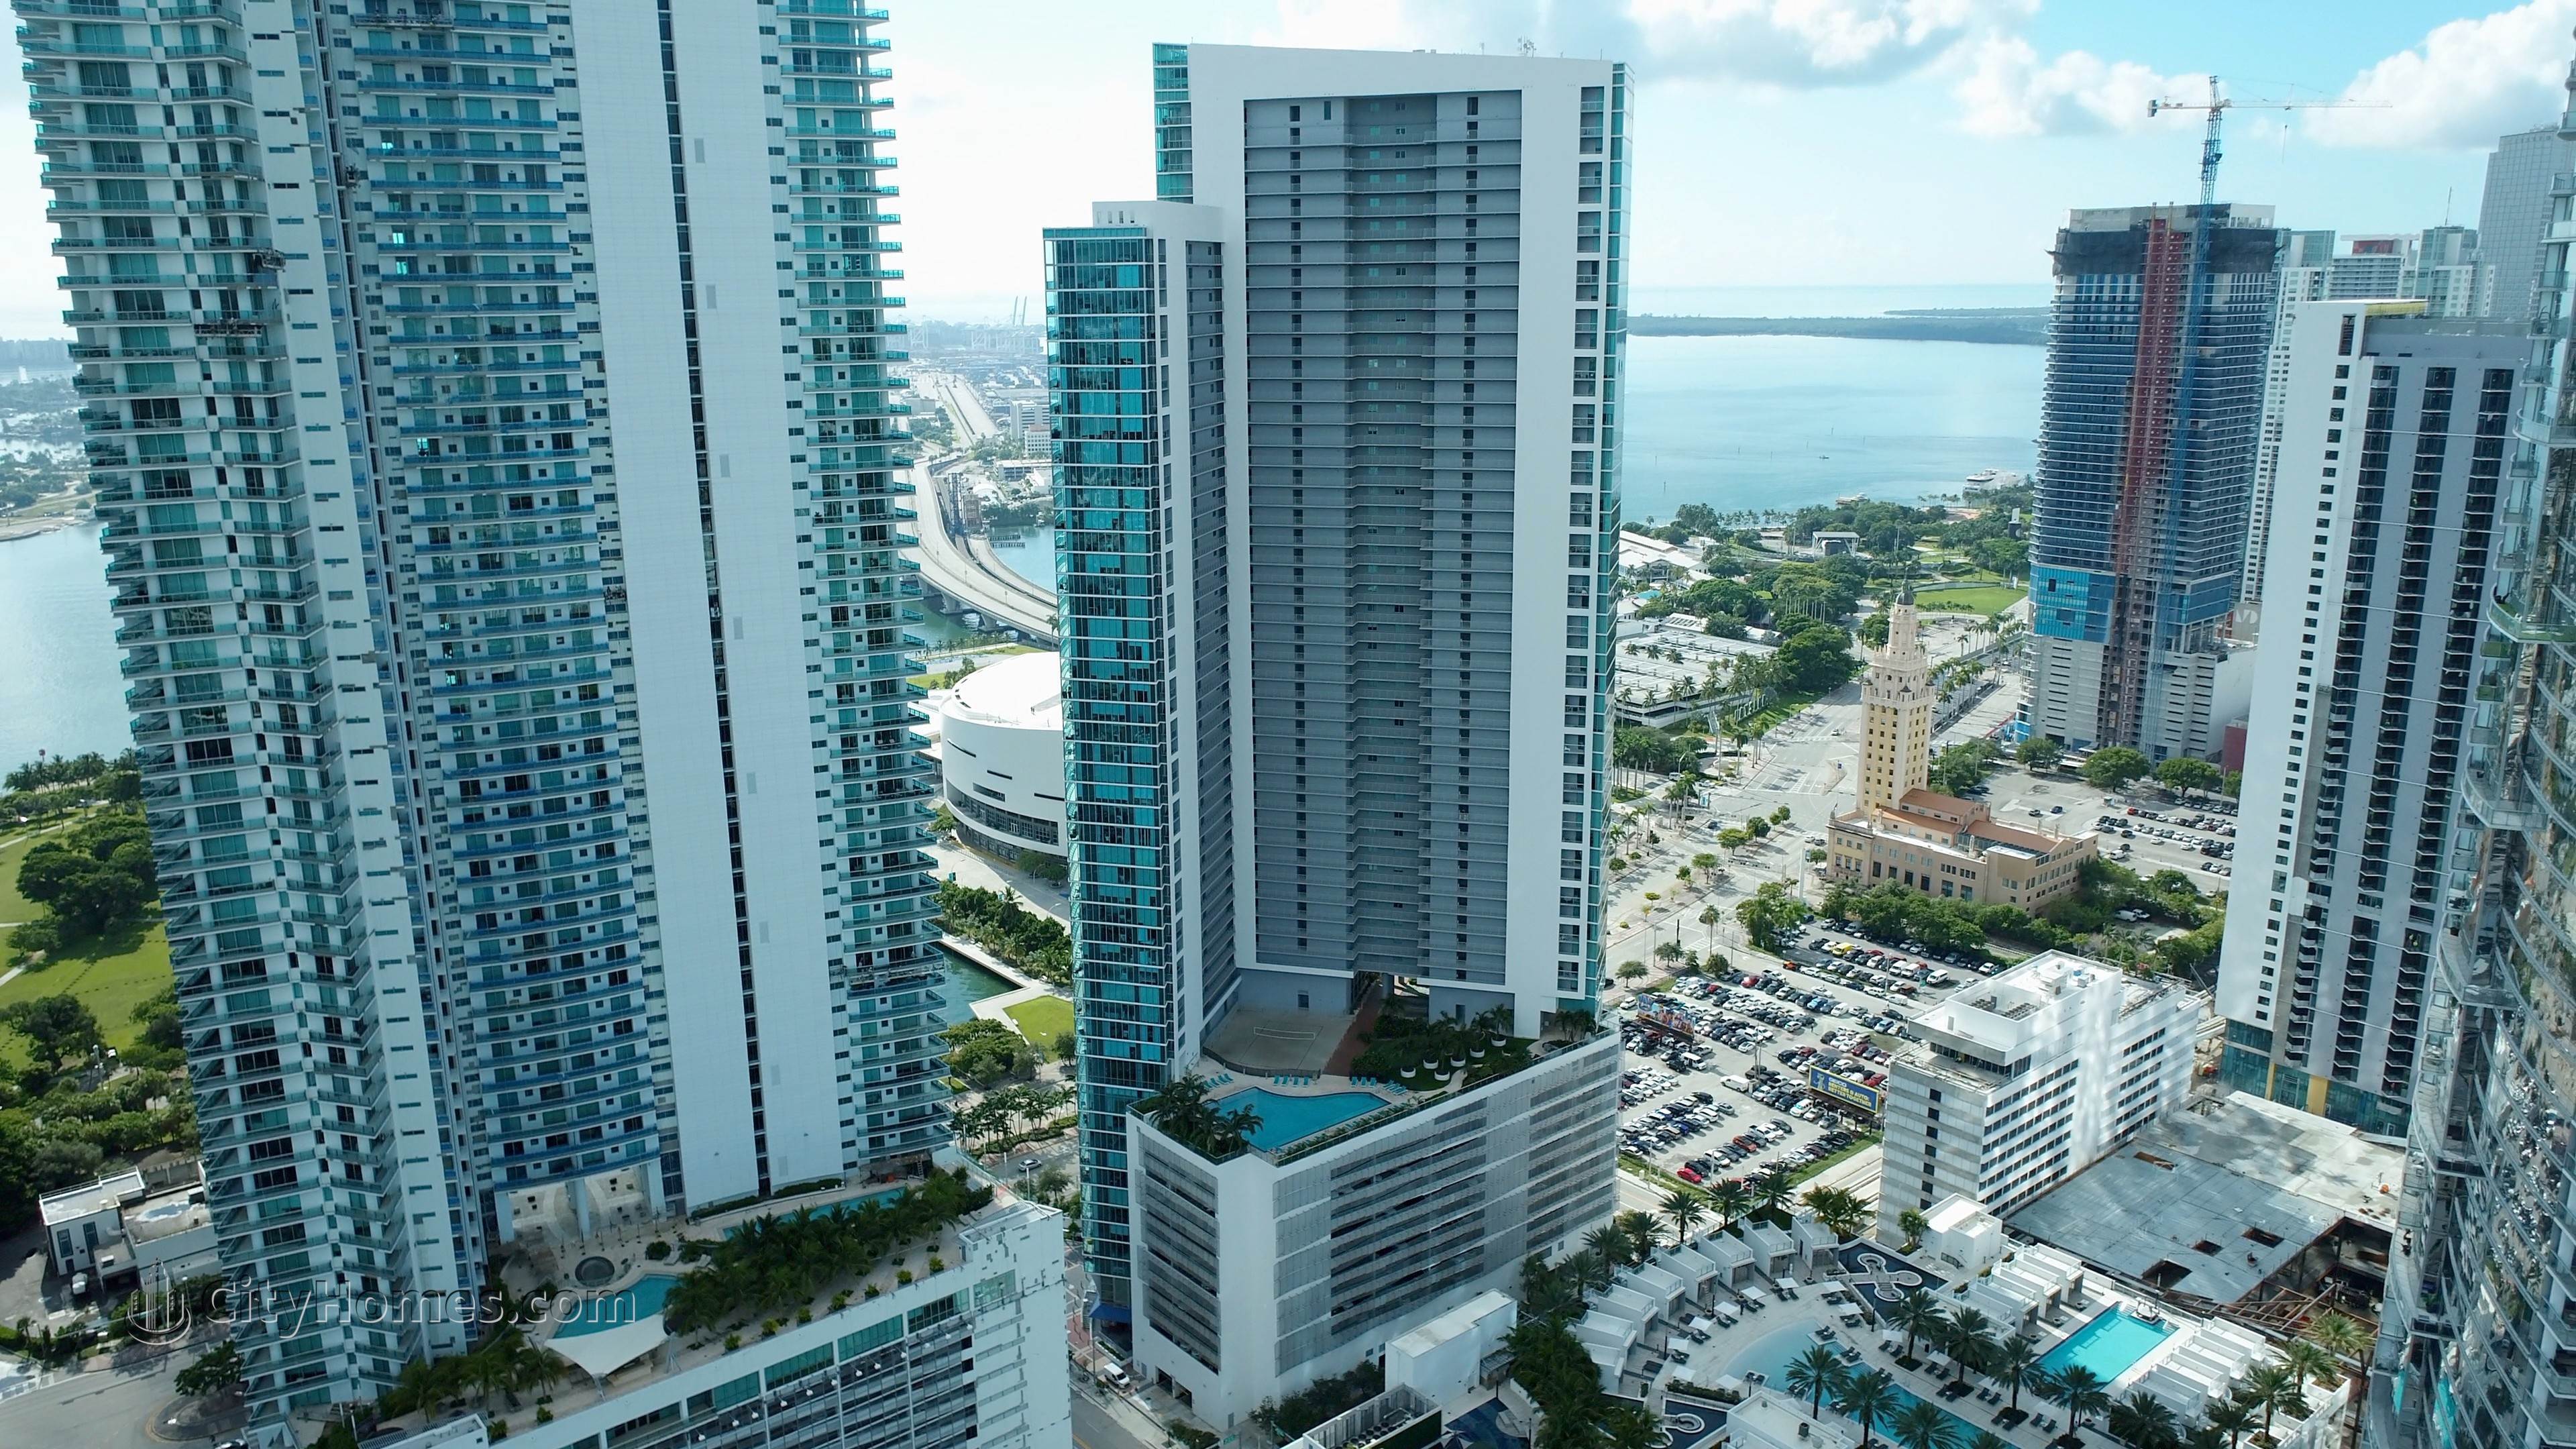 3. 900 Biscayne Bay gebouw op 900 Biscayne Boulevard, Miami, FL 33132